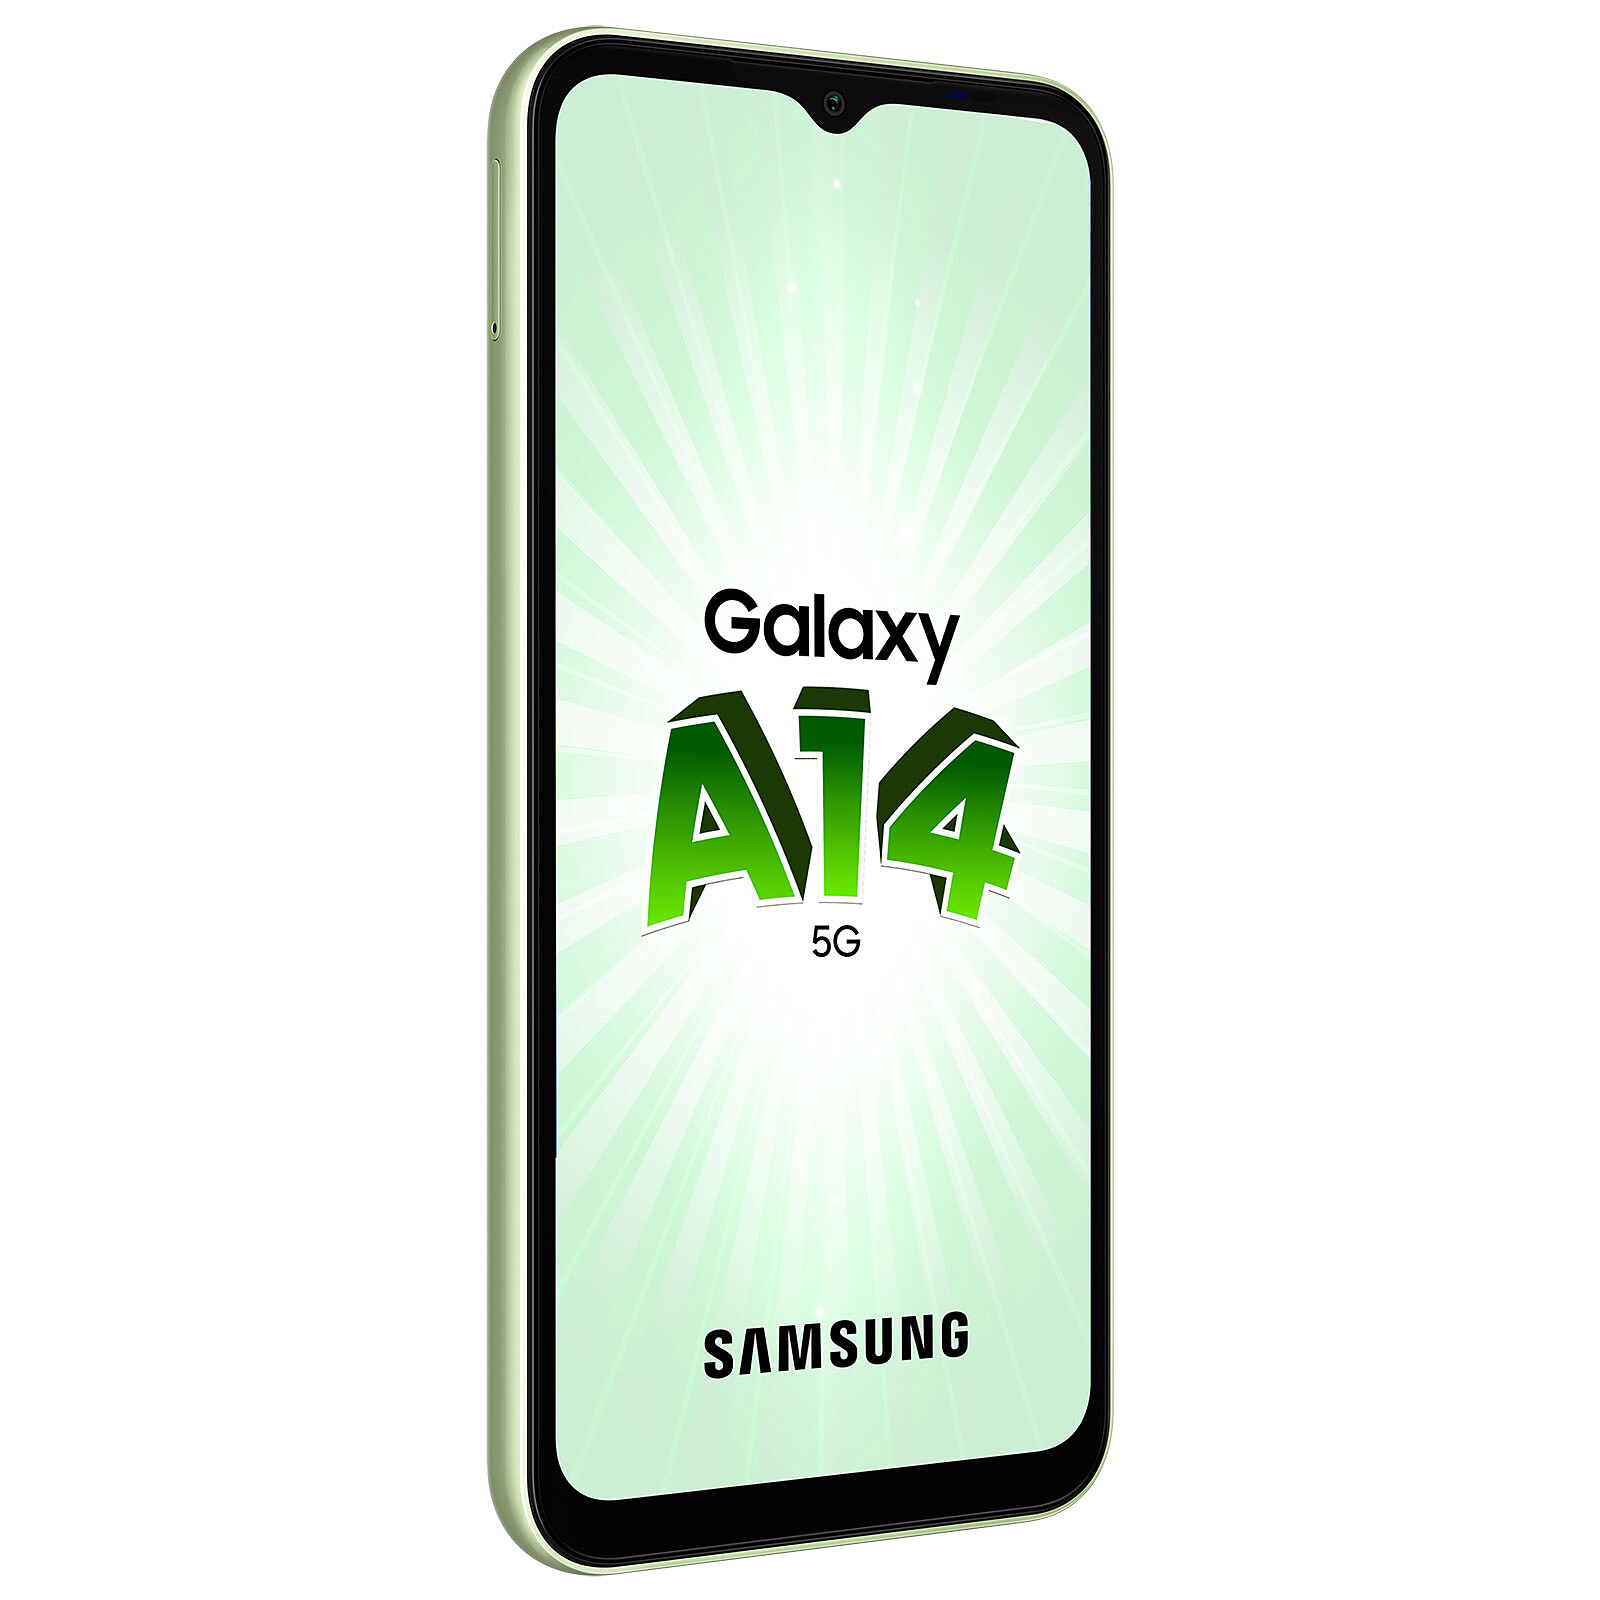 Samsung Galaxy A14 5G Lima (4GB / 64GB) - Móvil y smartphone - LDLC